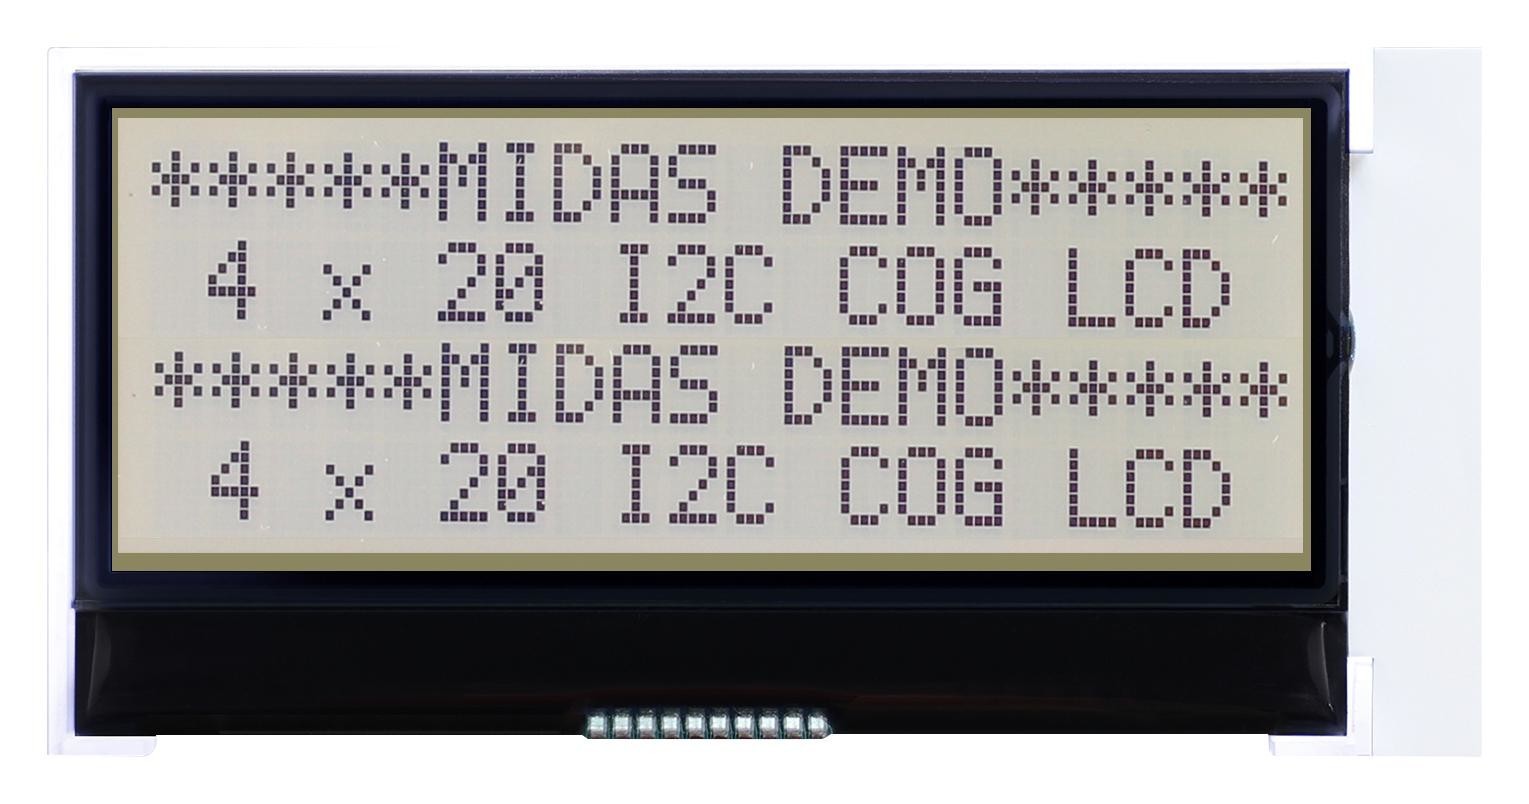 Midas Displays Mccog42005A6W-Fptlwi-V2 Lcd Module, 20 X 4, Cog, 4.67mm, Fstn